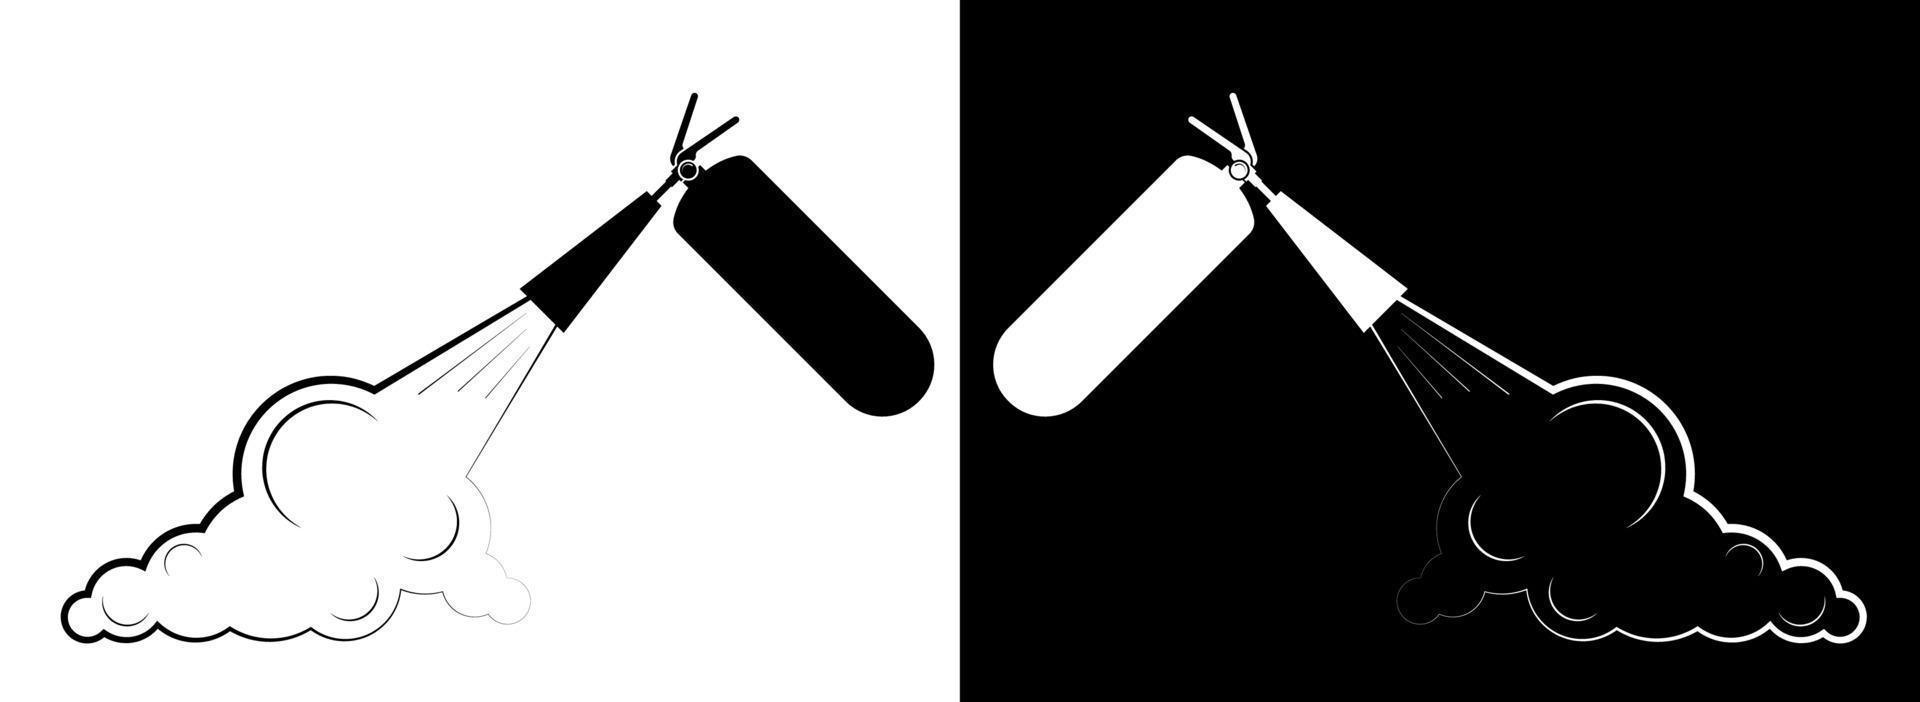 Feuerlöscher löscht ein Feuer. Symbol im Schwarz-Weiß-Stil. technische Zeichen und Symbole. isolierter Vektor